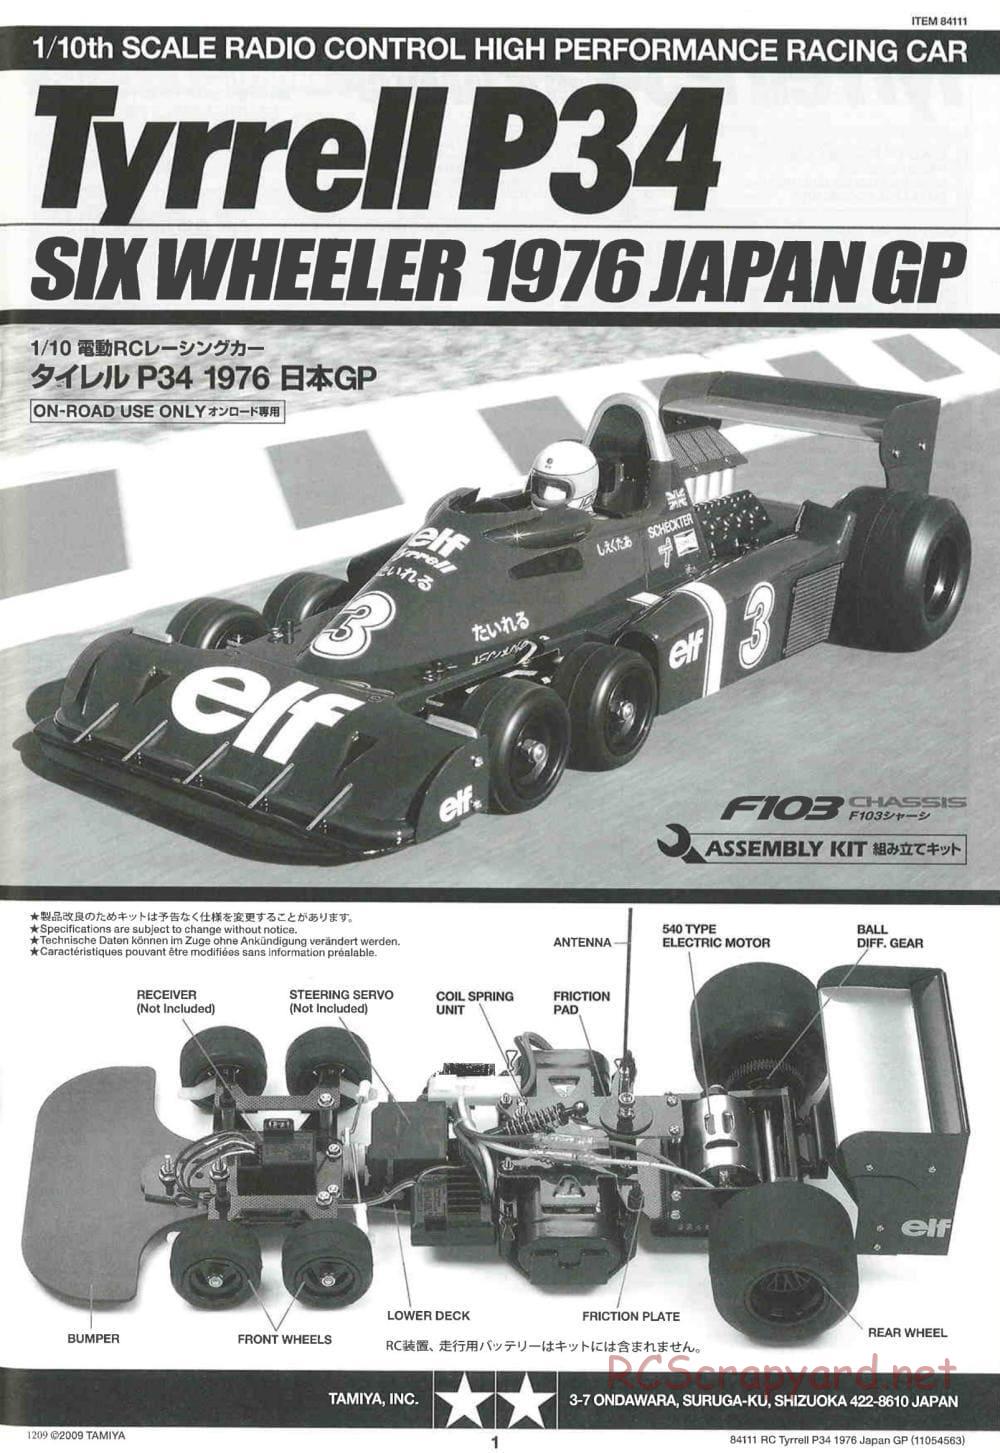 Tamiya - Tyrrell P34 1976 Japan GP - F103-6W Chassis - Manual - Page 1